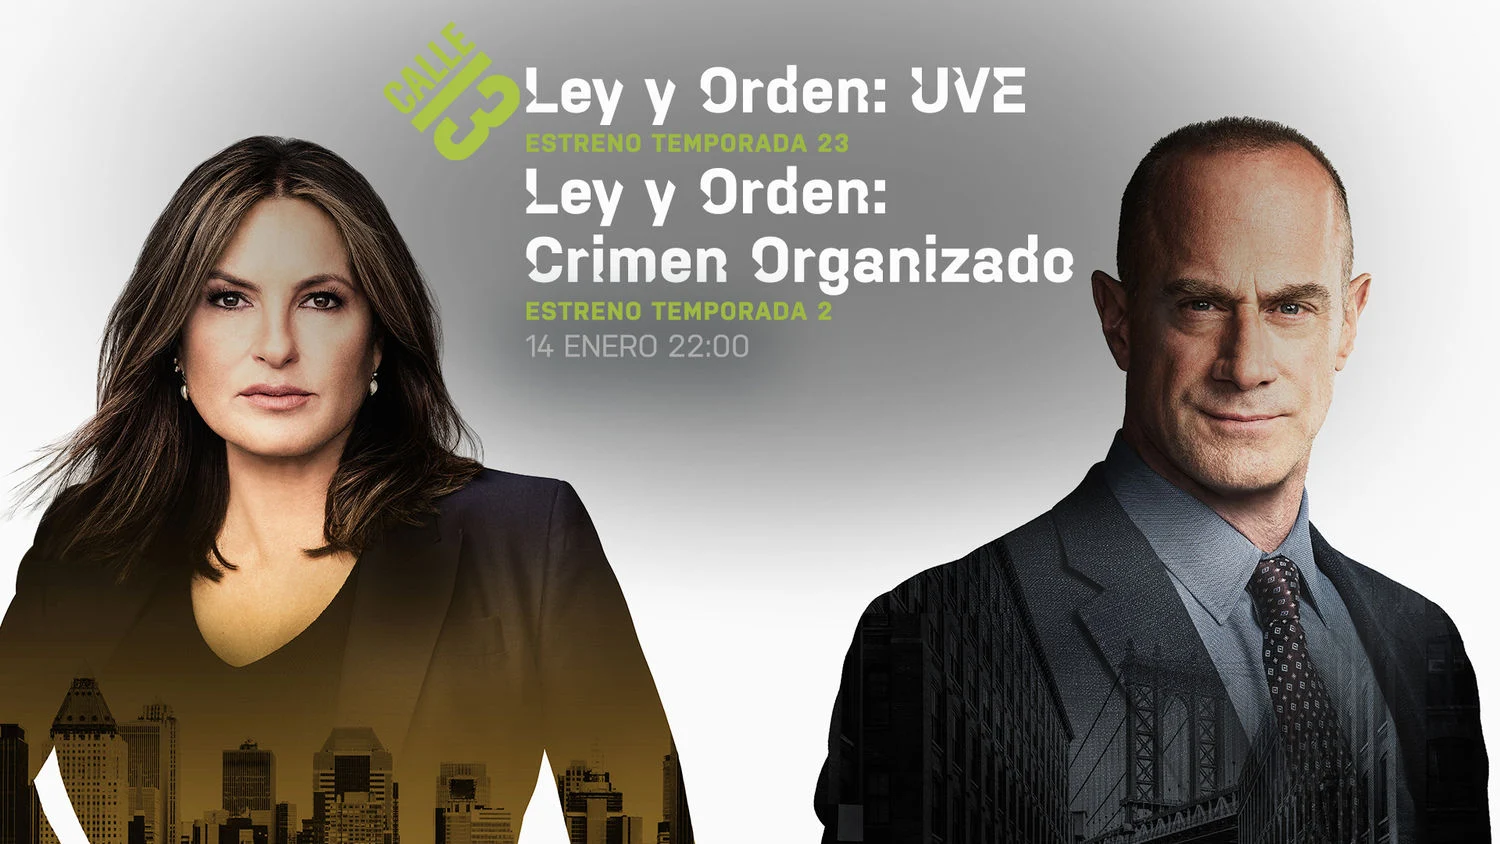 Imagen Ley y orden: UVE Temporada 23 Ley y orden: Crimen organizado Temporada 2